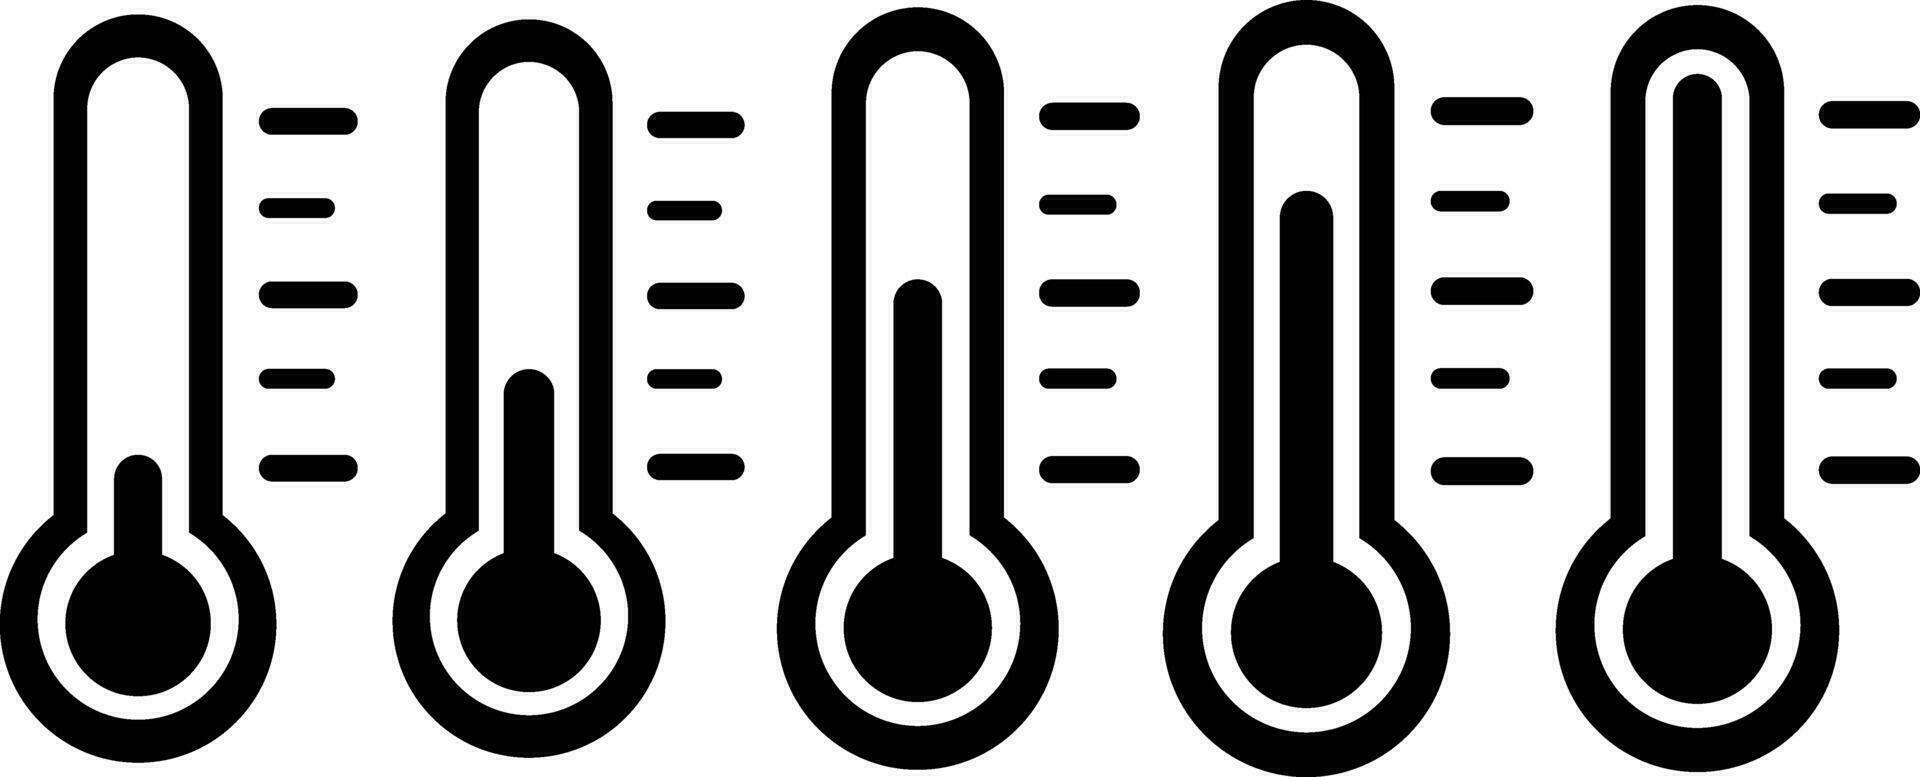 uppsättning termometer värma kall symbol. grupp väder instrument tecken. samling temperatur mått Utrustning ikon. temperatur skala symbol. enda objekt vektor